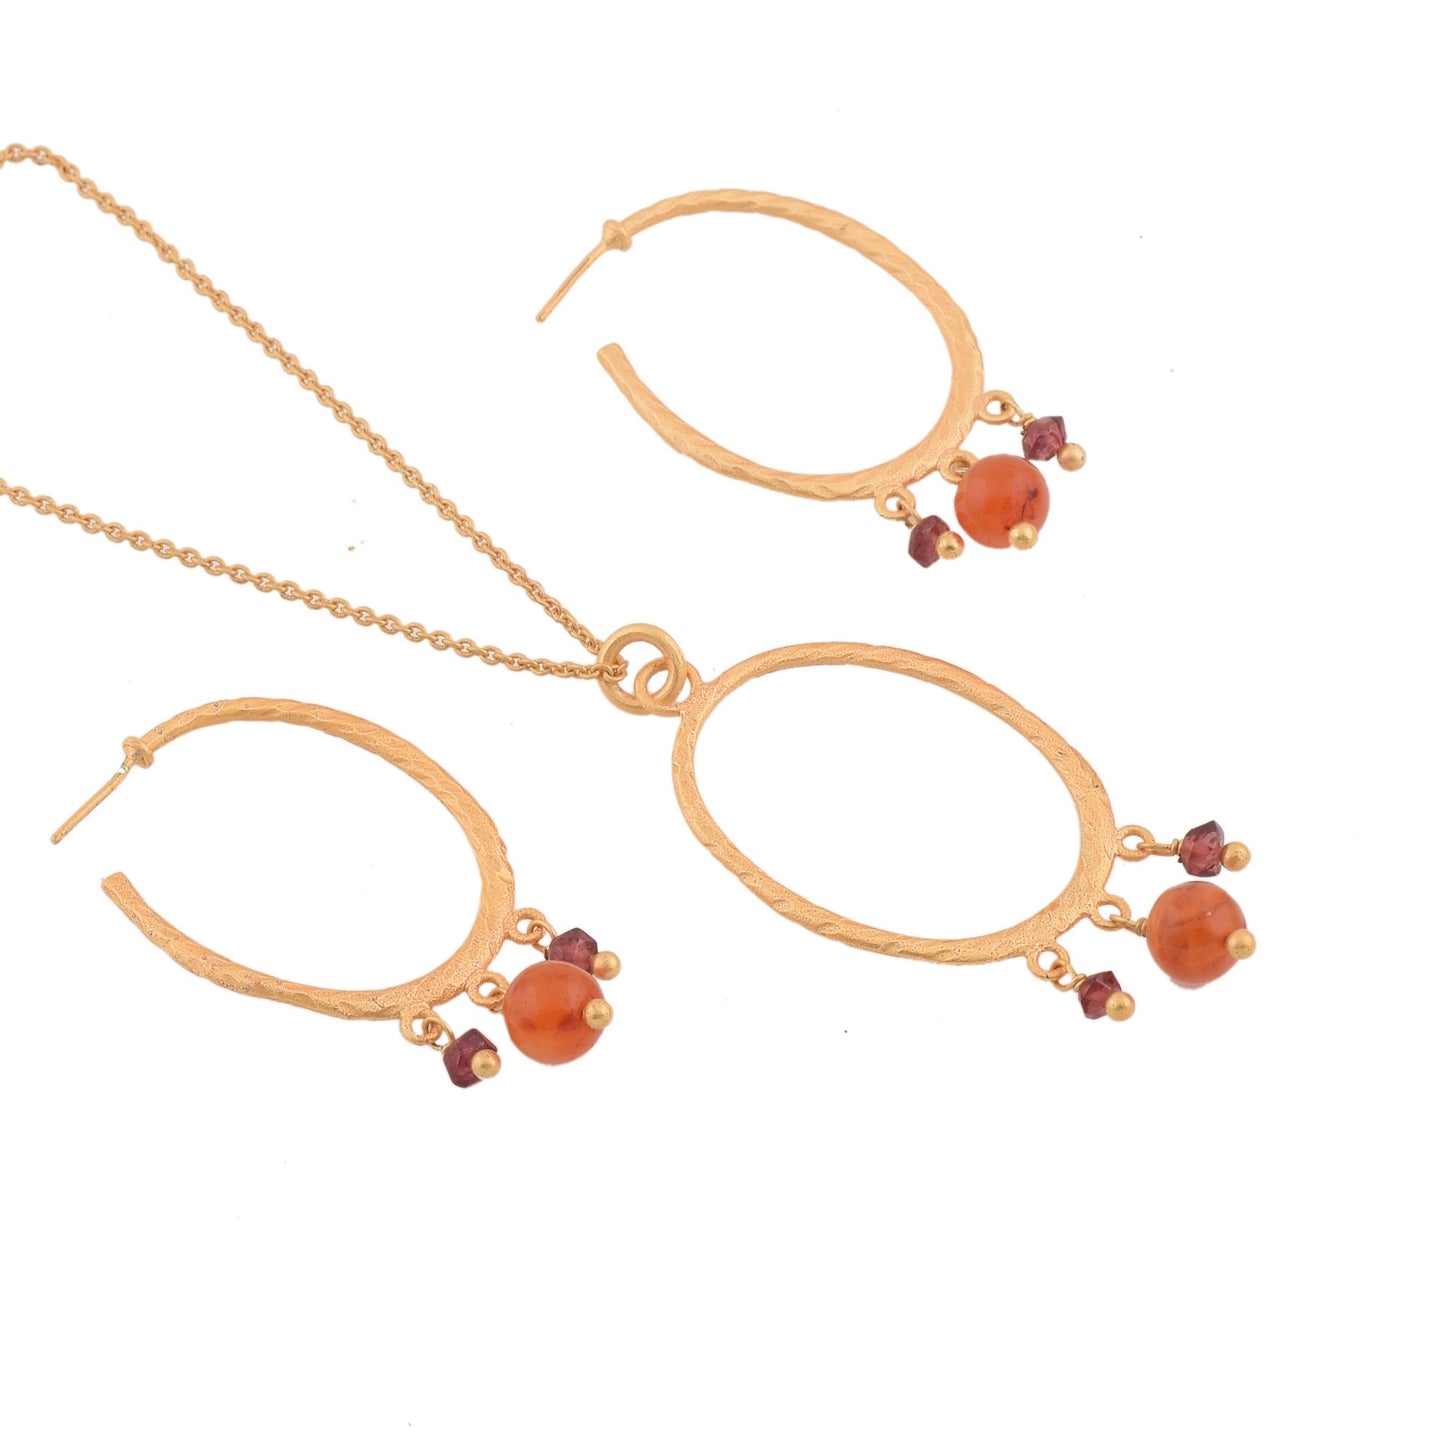 Carnelian and Rhodolite Garnet Drops Jewelry Set